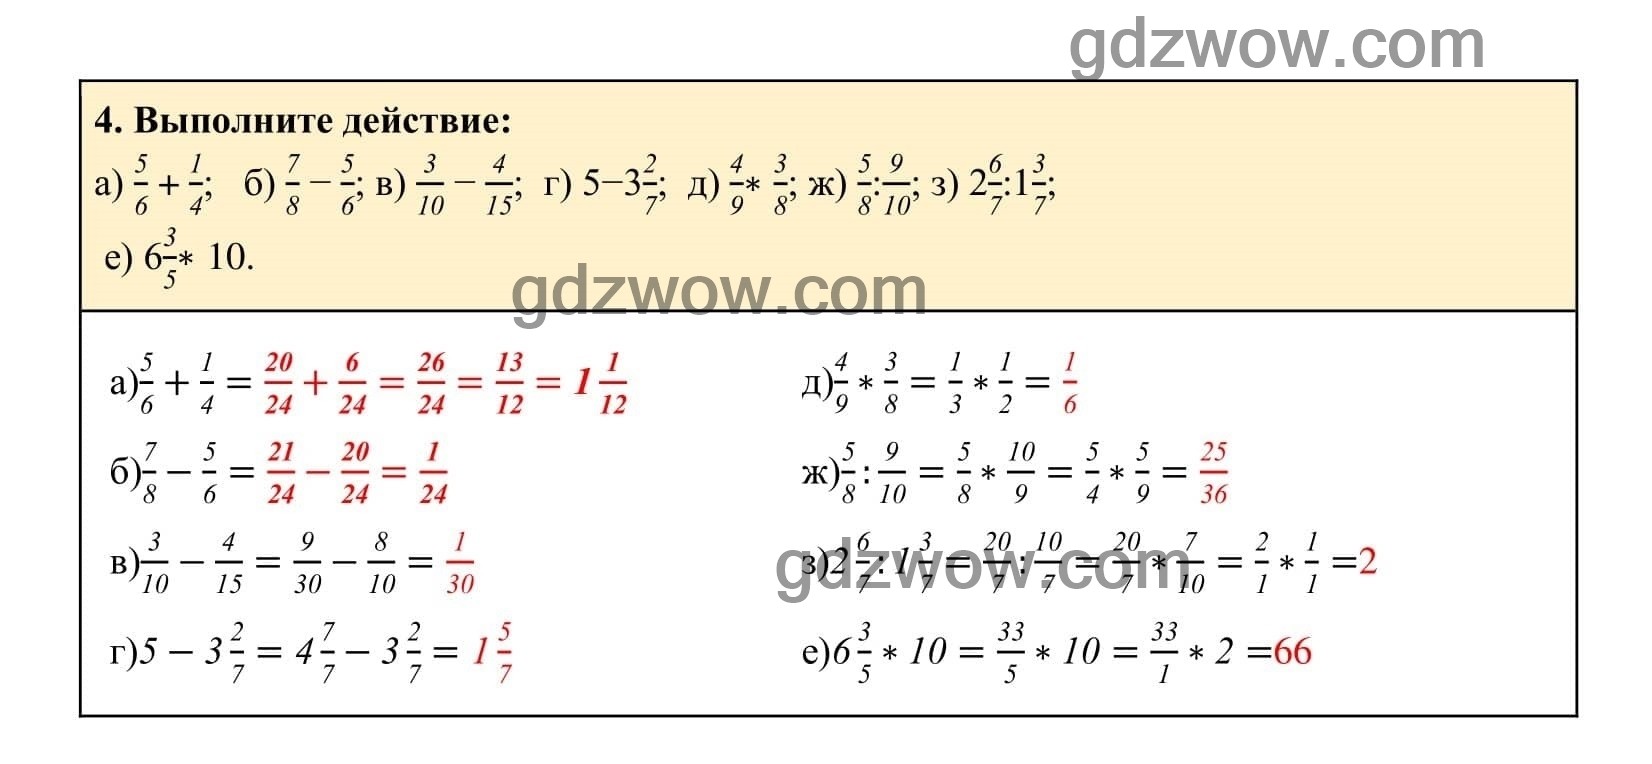 Упражнение 4 - ГДЗ по Алгебре 7 класс Учебник Макарычев (решебник) - GDZwow